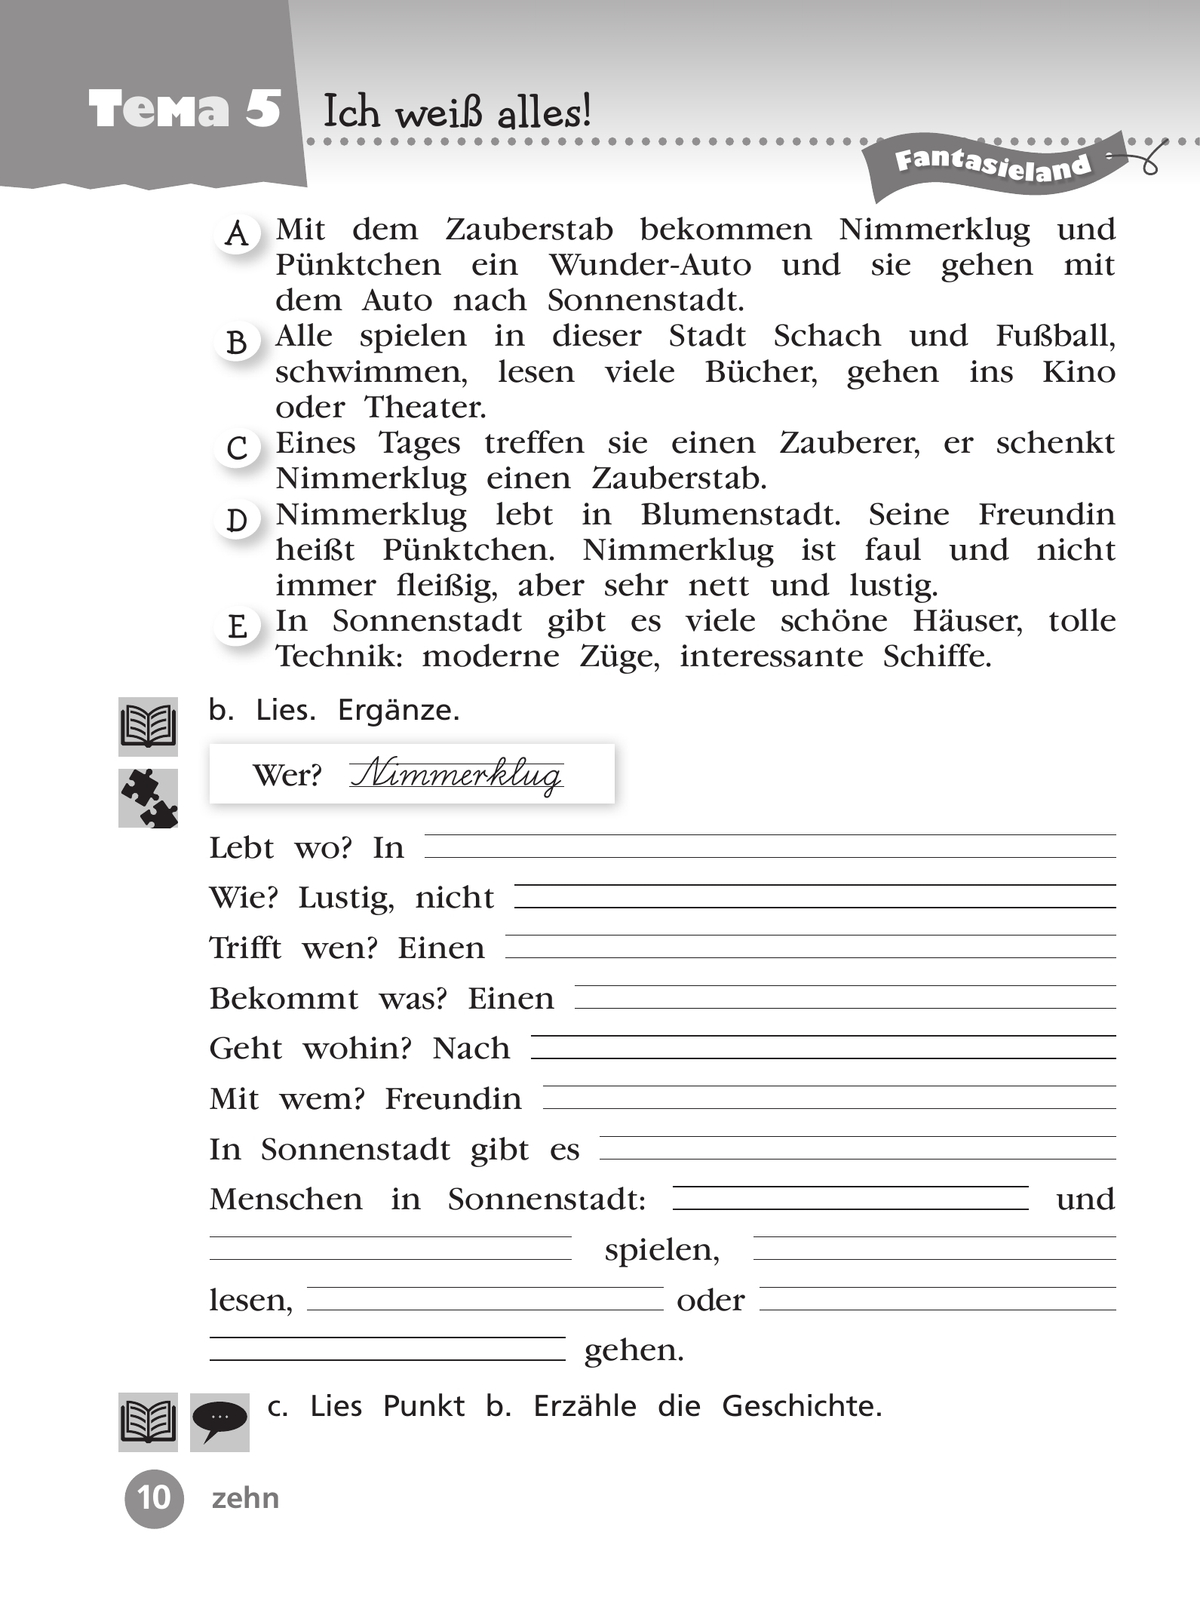 Немецкий язык. Рабочая тетрадь. 4 класс. В 2 ч. Часть 2 10